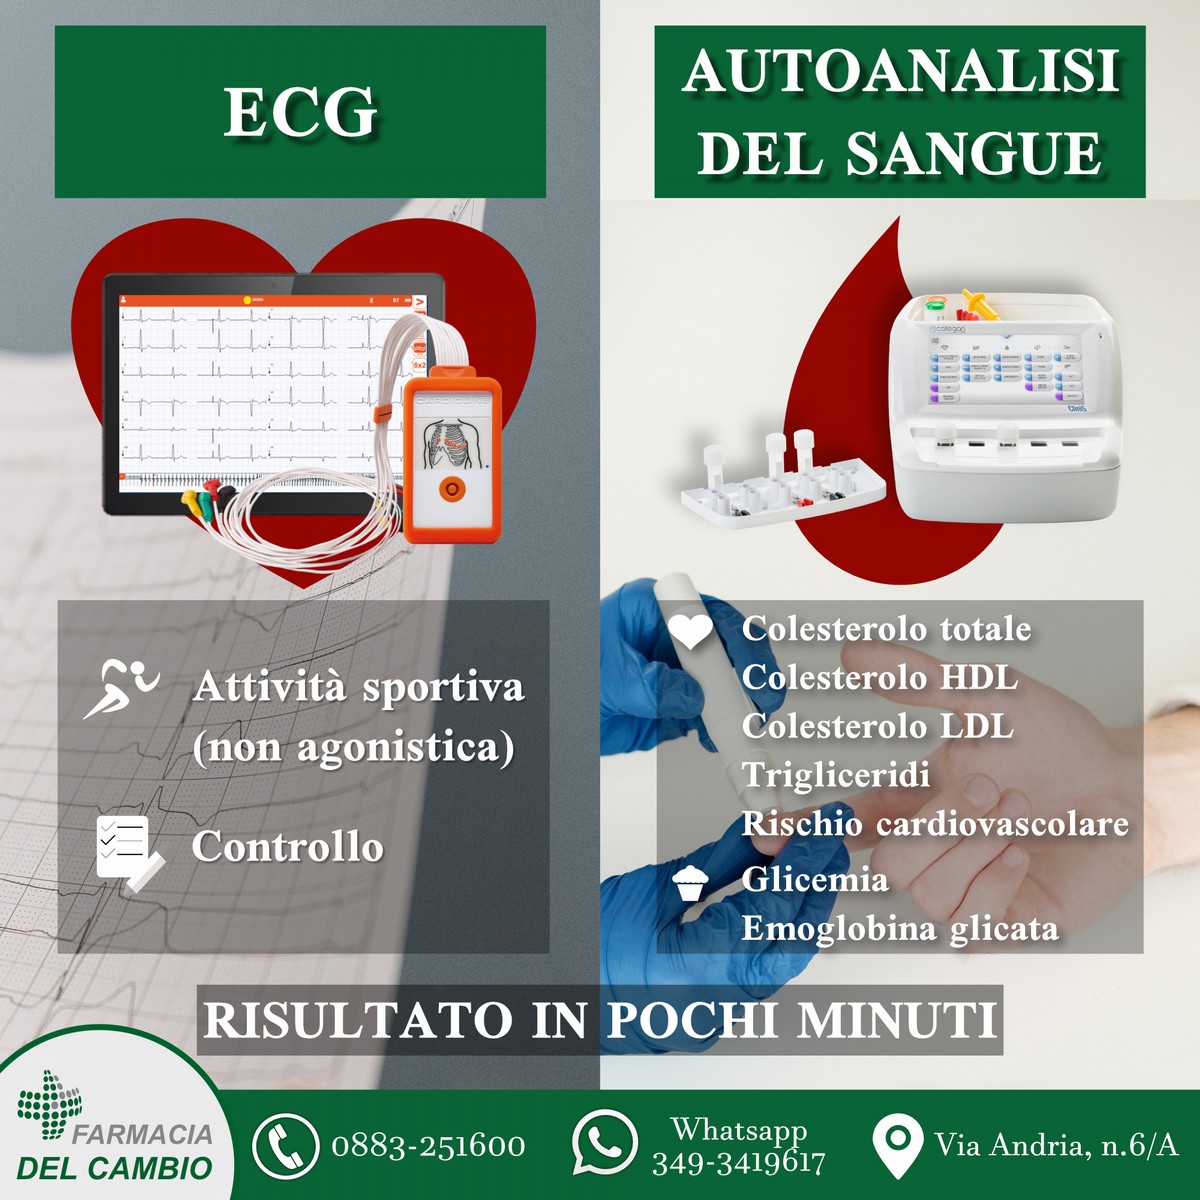 Farmacia del Cambio, servizi ECG e autoanalisi del sangue